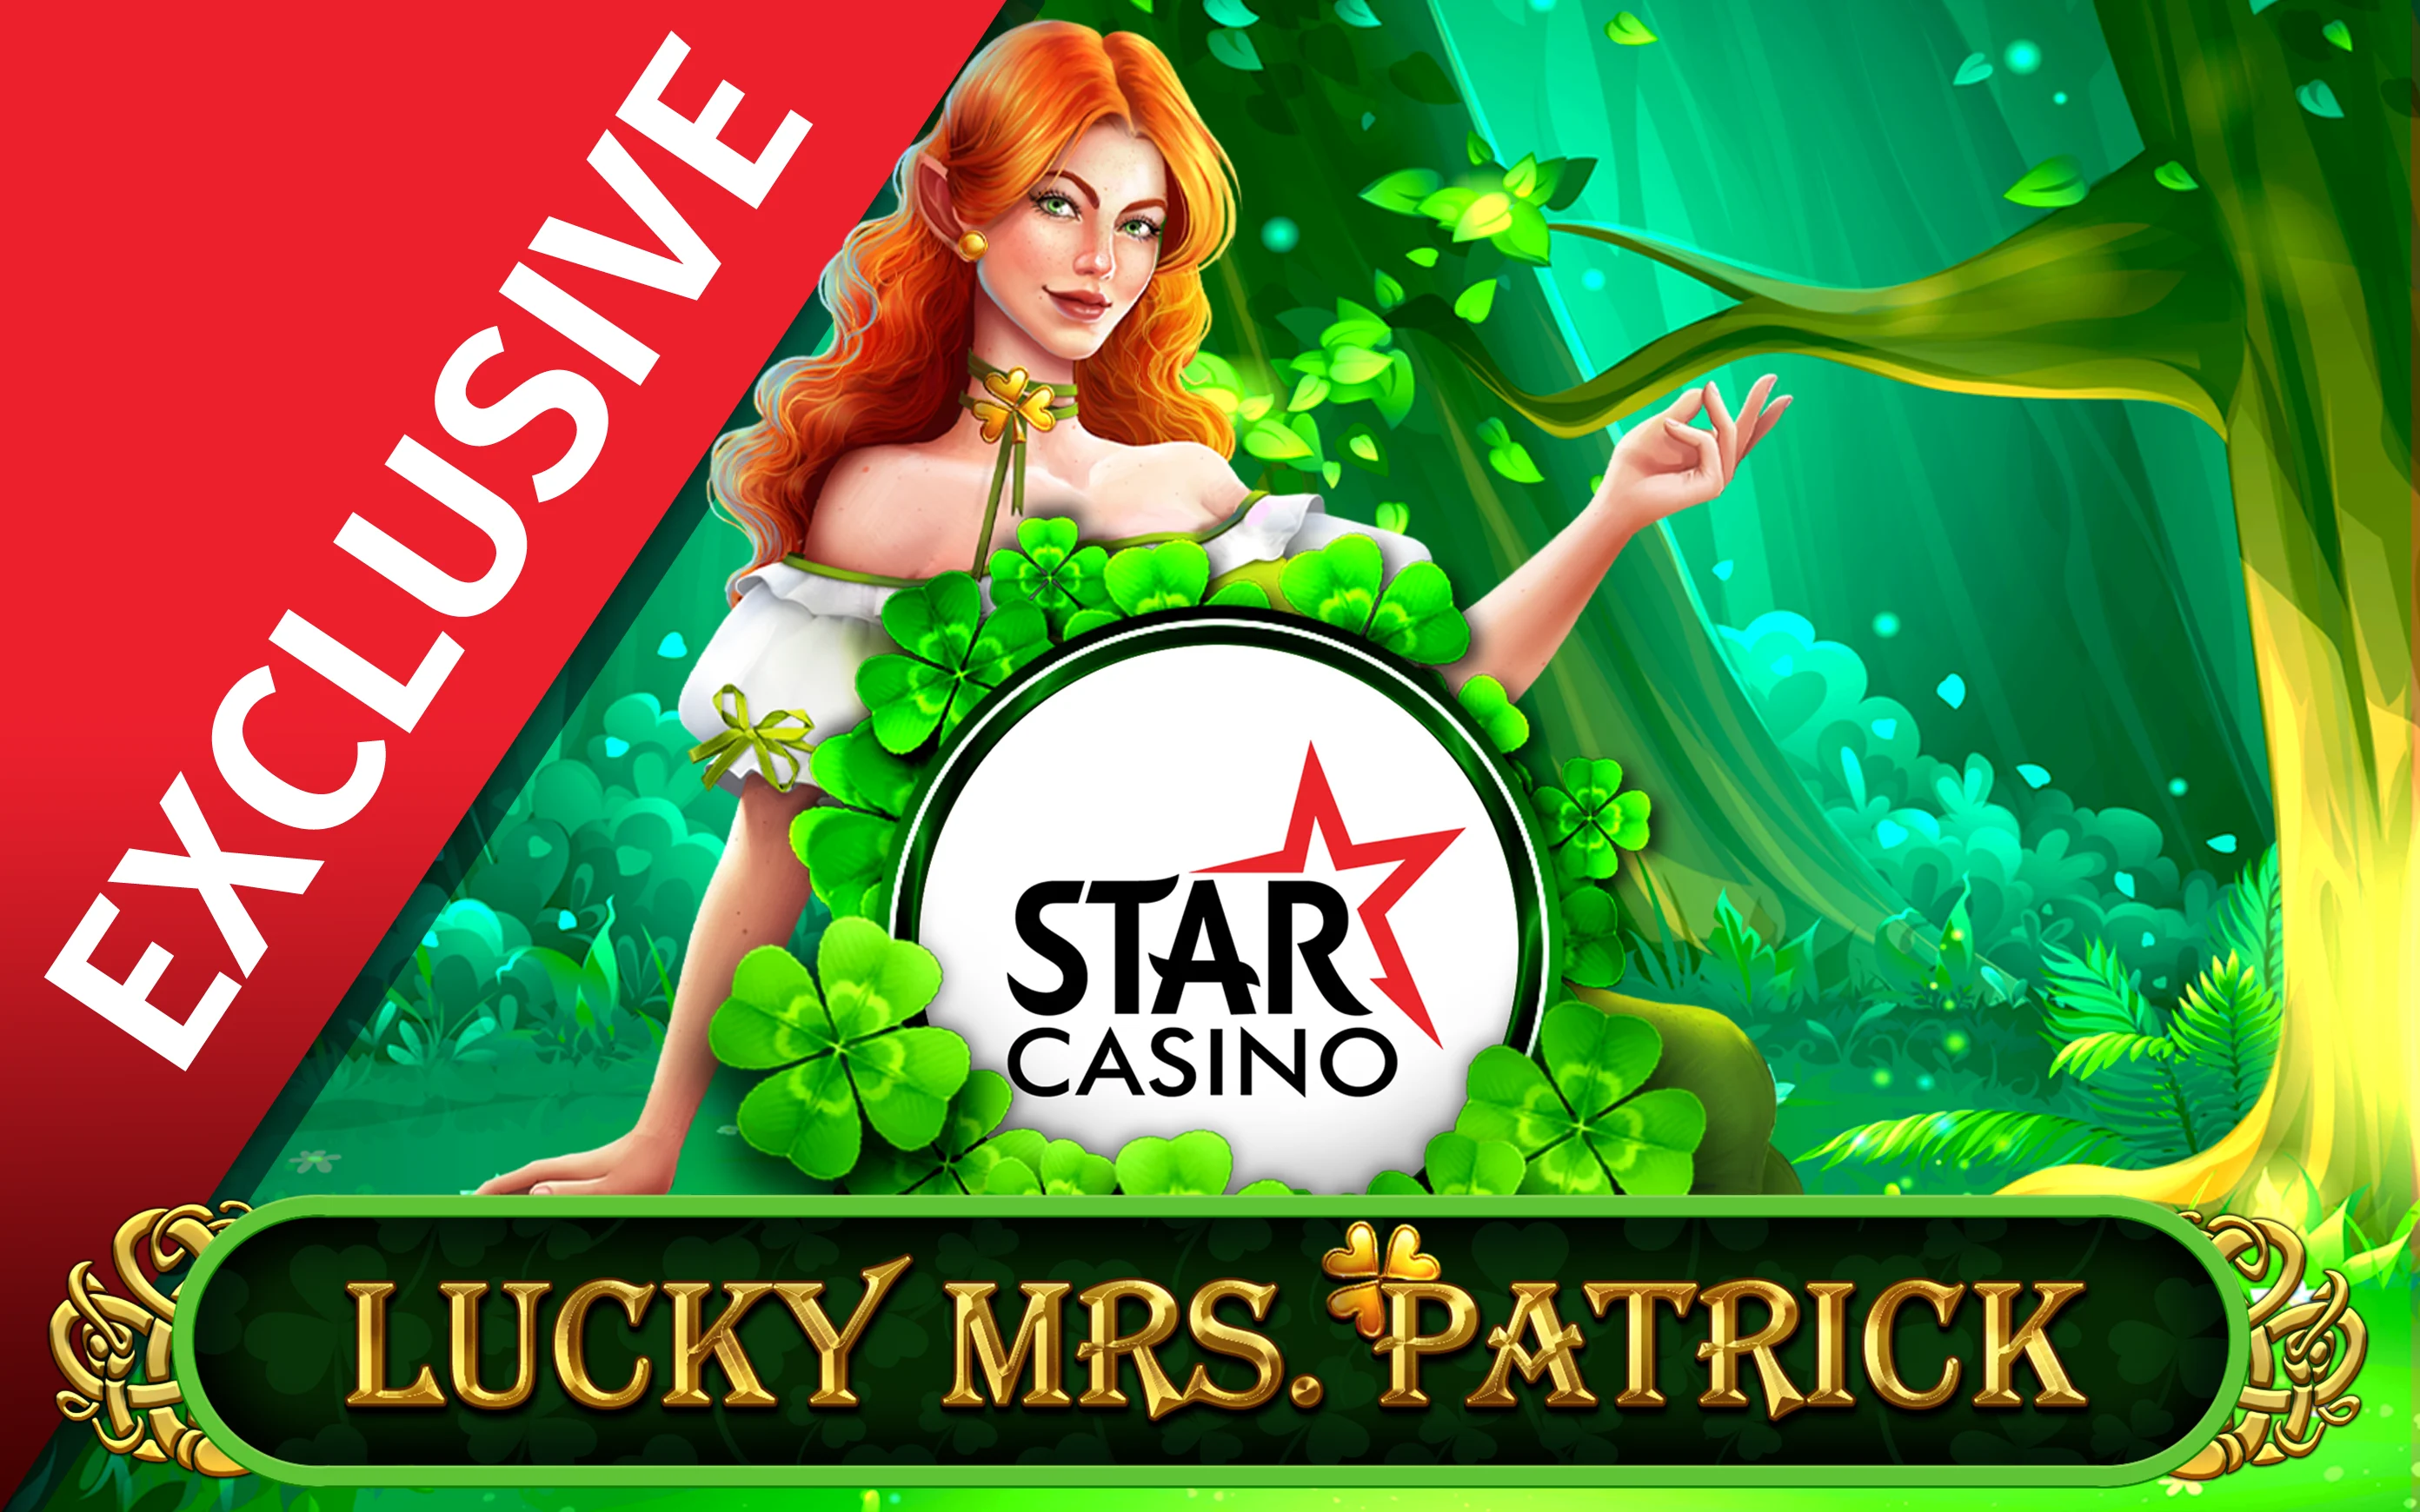 Juega a Starcasino Lucky Mrs Patrick en el casino en línea de Starcasino.be